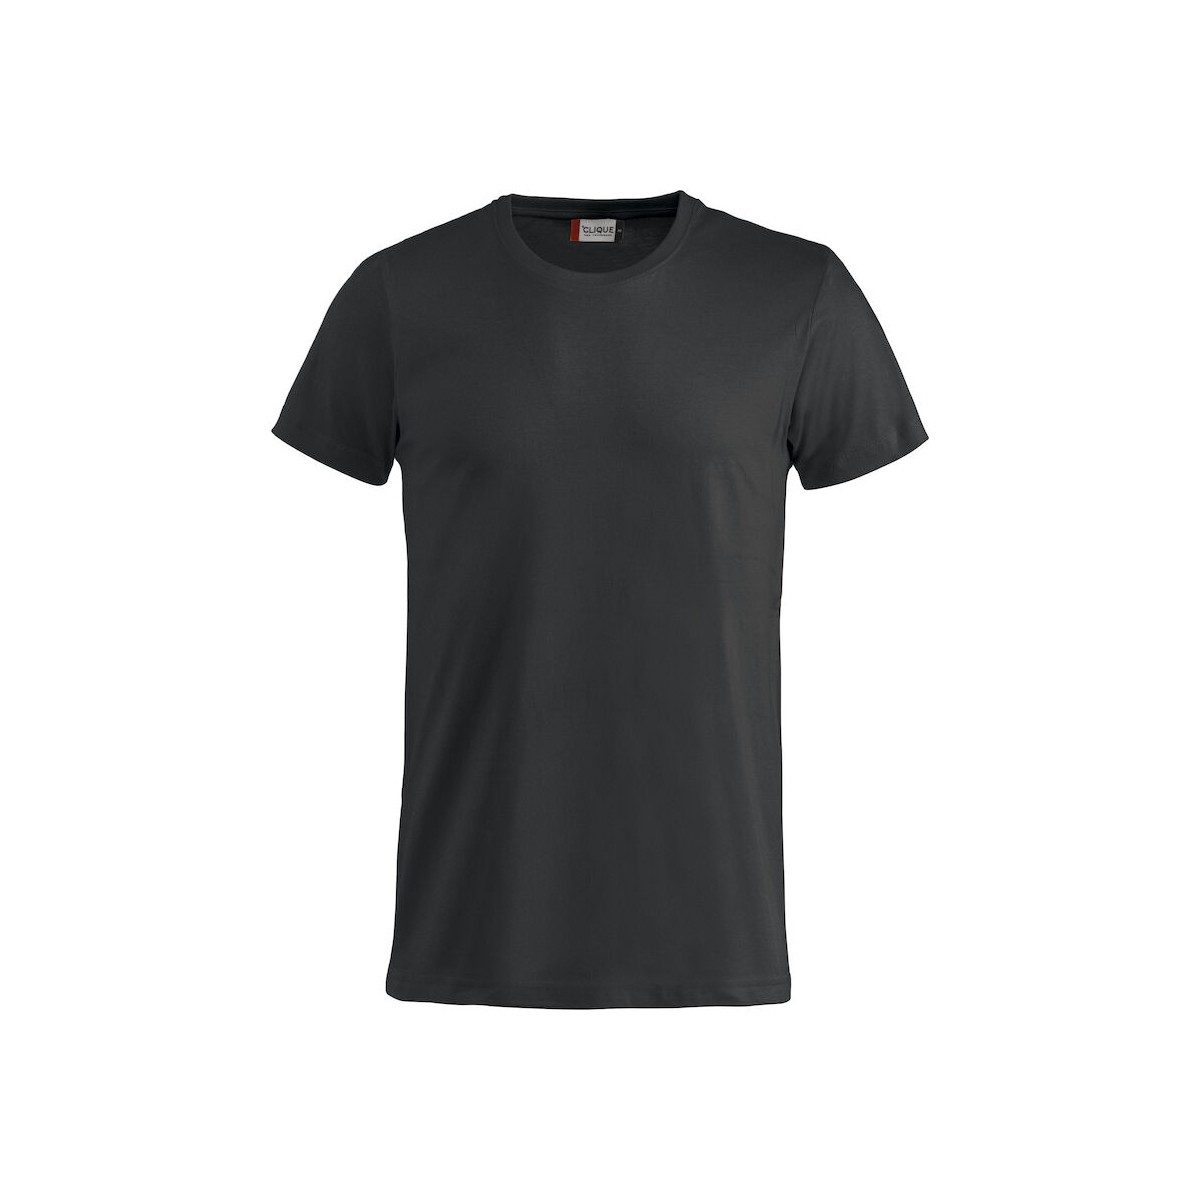 T-shirt 100% coton - CLIQUE - Coupe homme - Couleur noir - Personnalisable en petite quantité